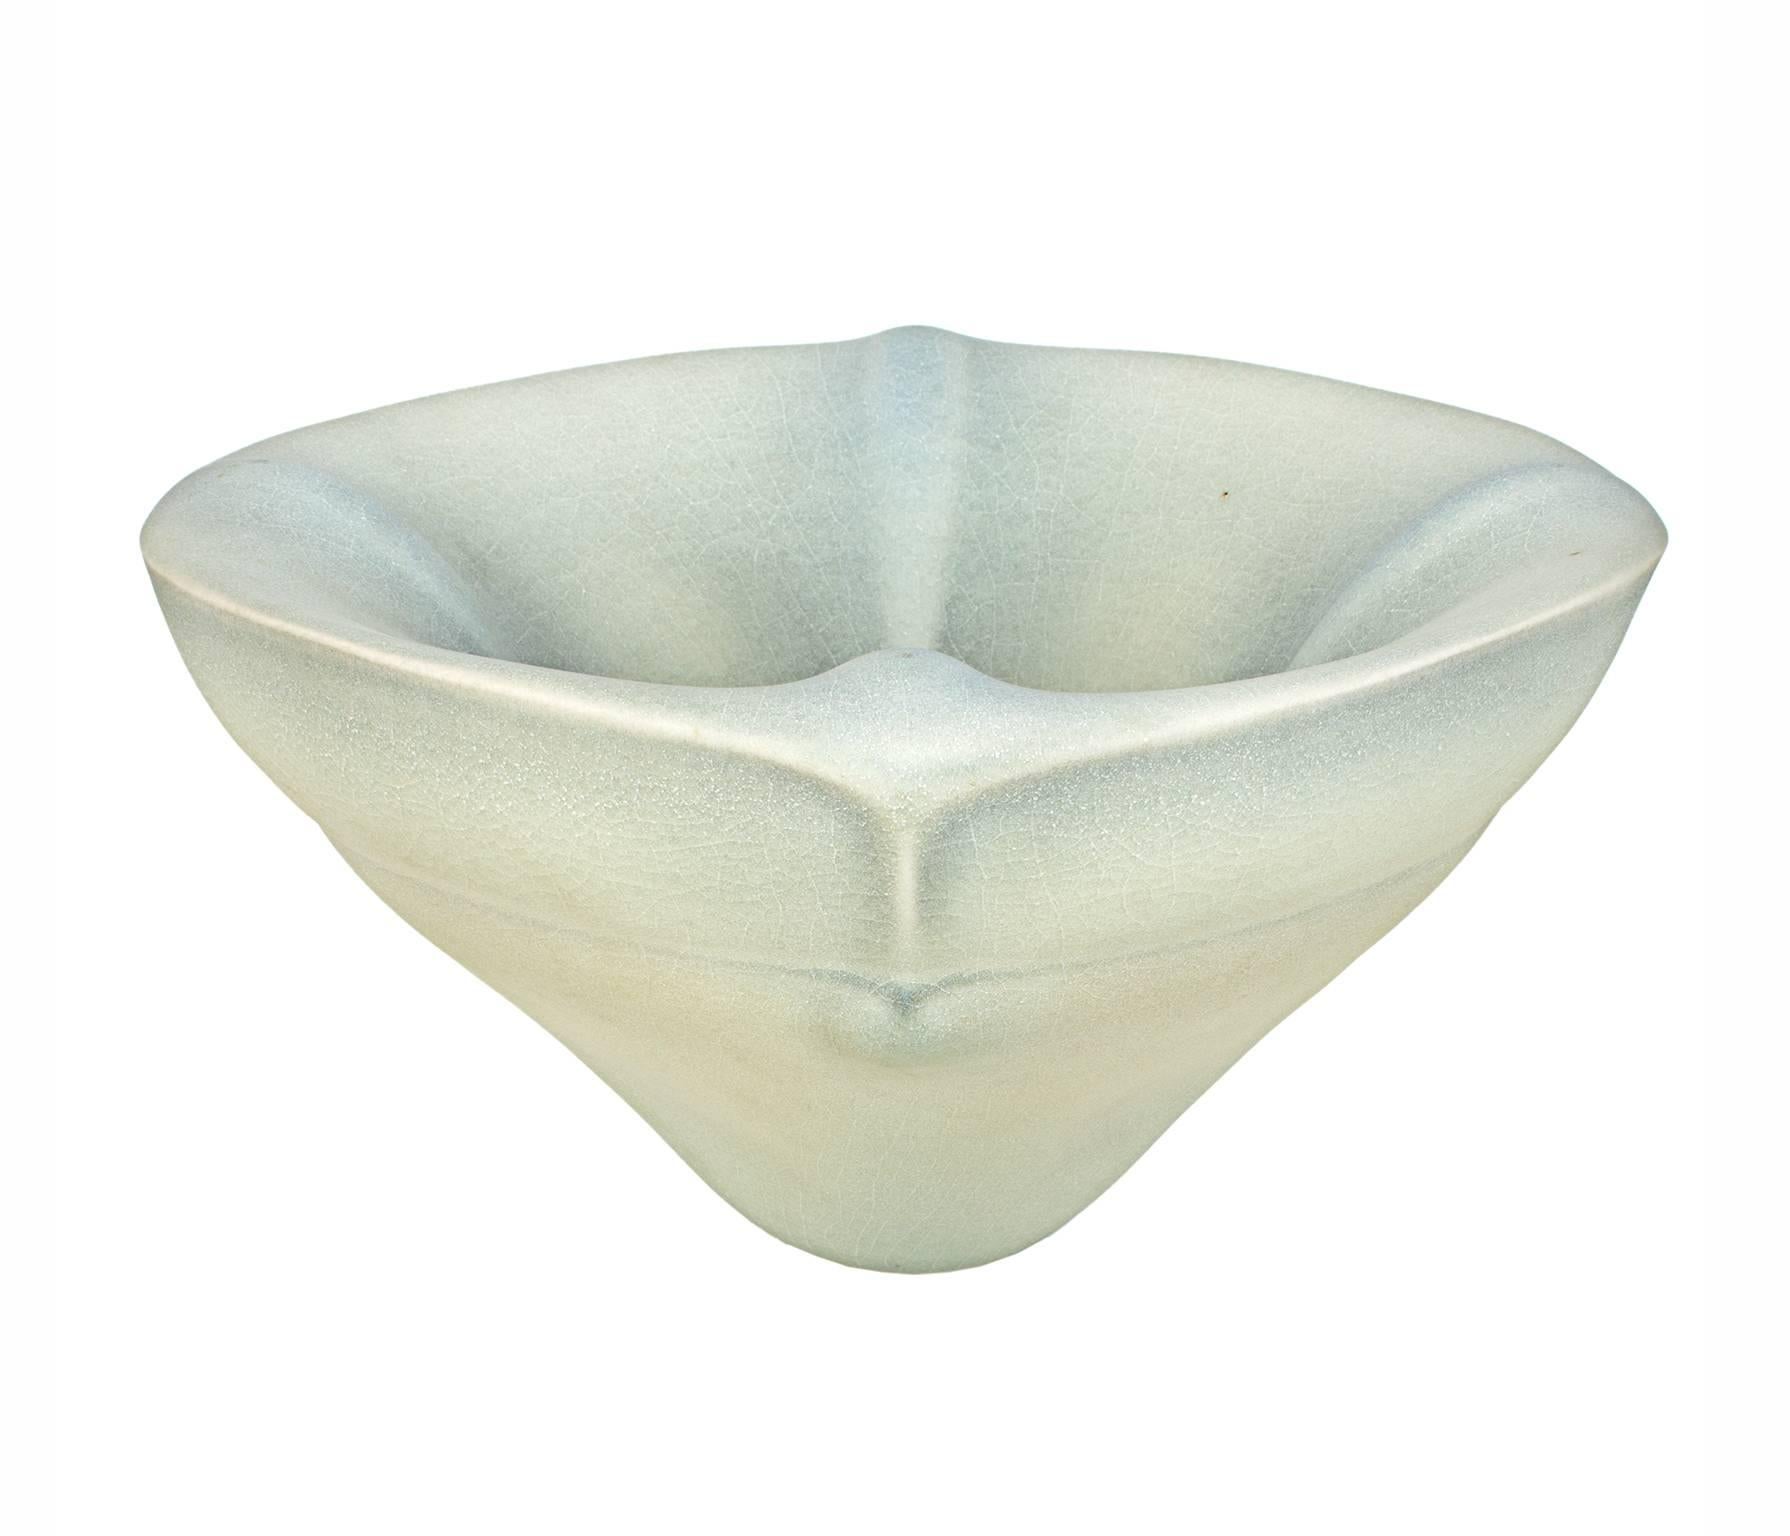 wayne fischer ceramics